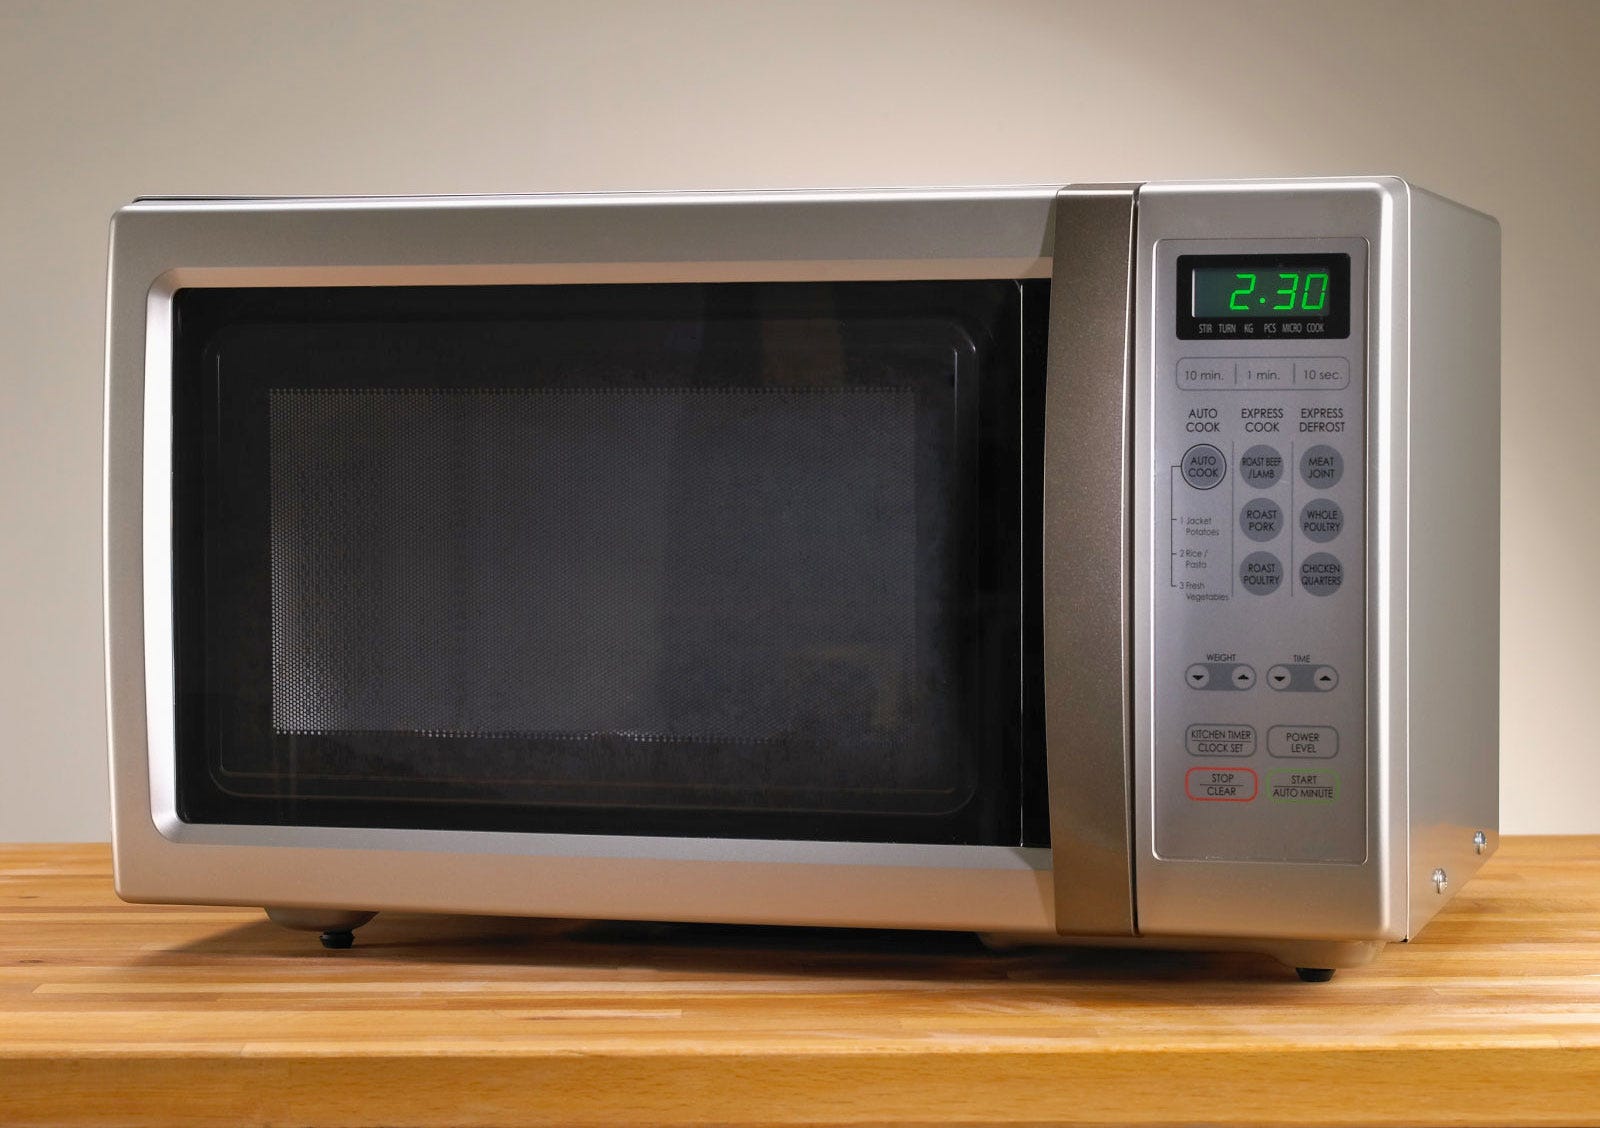 Моды на свч. Микроволновая печь Microwave Oven. Печь СВЧ rcs511ts. СВЧ печь Wellton Microwave. LG 1947 микроволновка.